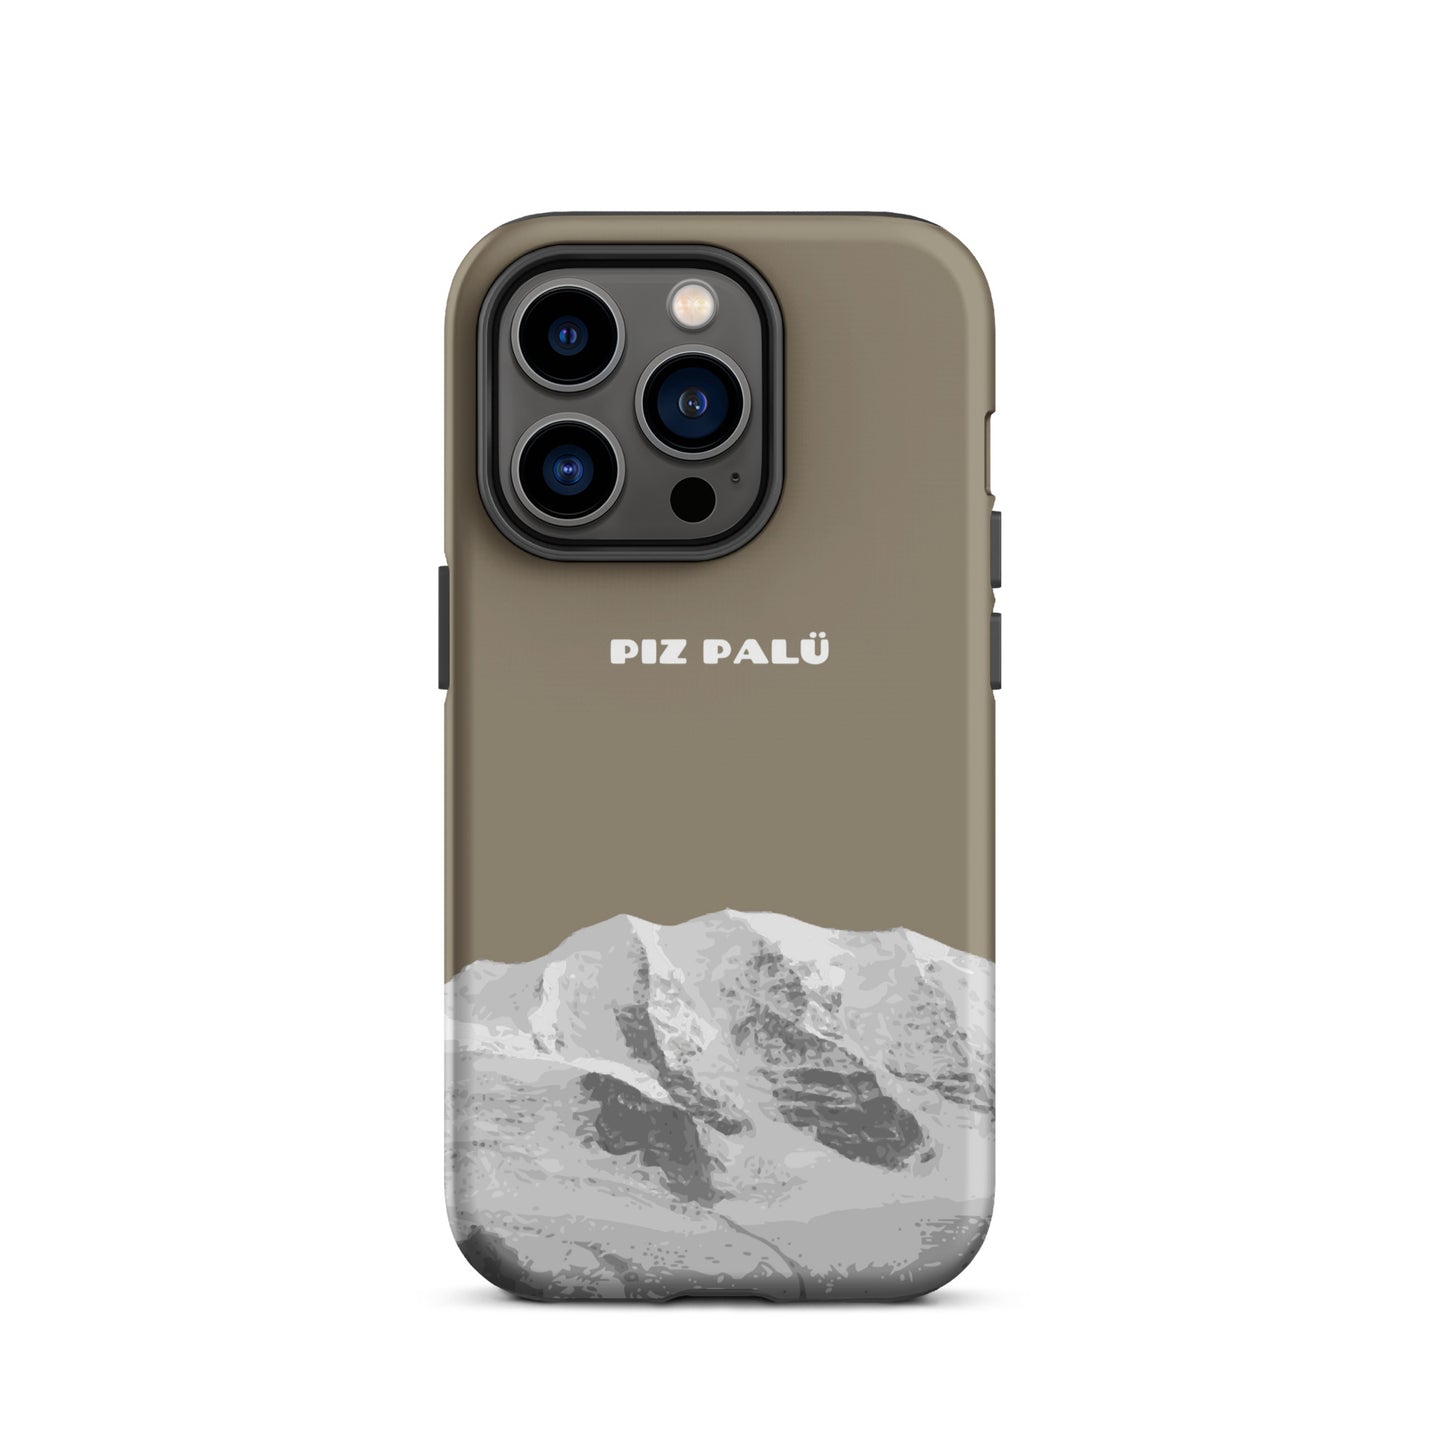 Hülle für das iPhone 14 Pro von Apple in der Farbe Graubrau, dass den Piz Palü in Graubünden zeigt.